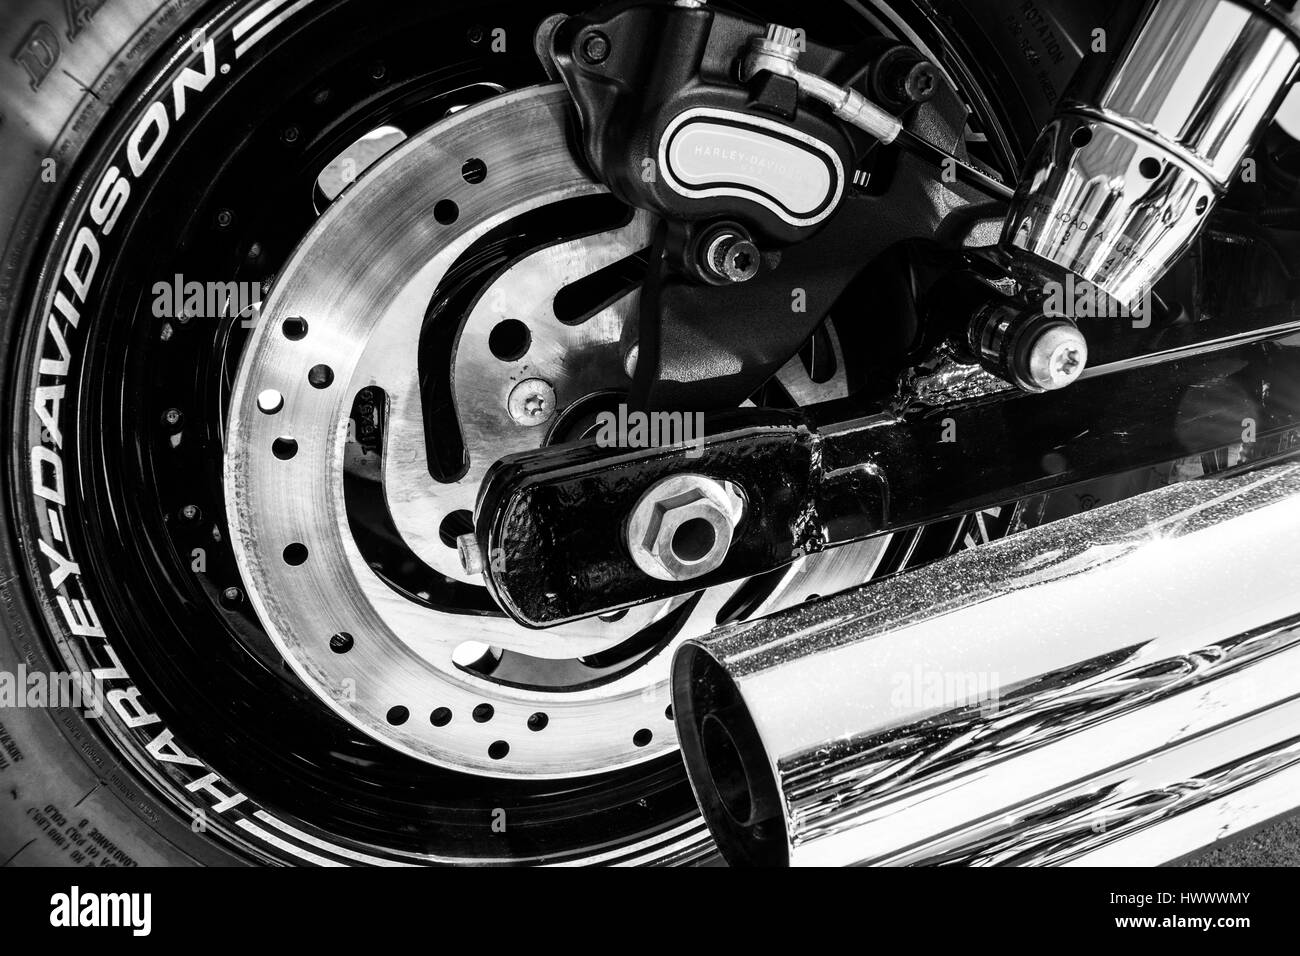 Indianapolis - Circa Mars 2017 : Pneu arrière, Disque de frein et le tuyau d'échappement d'une Harley Davidson. Harley Davidson Motorcycles sont connus pour leur fidèle F Banque D'Images